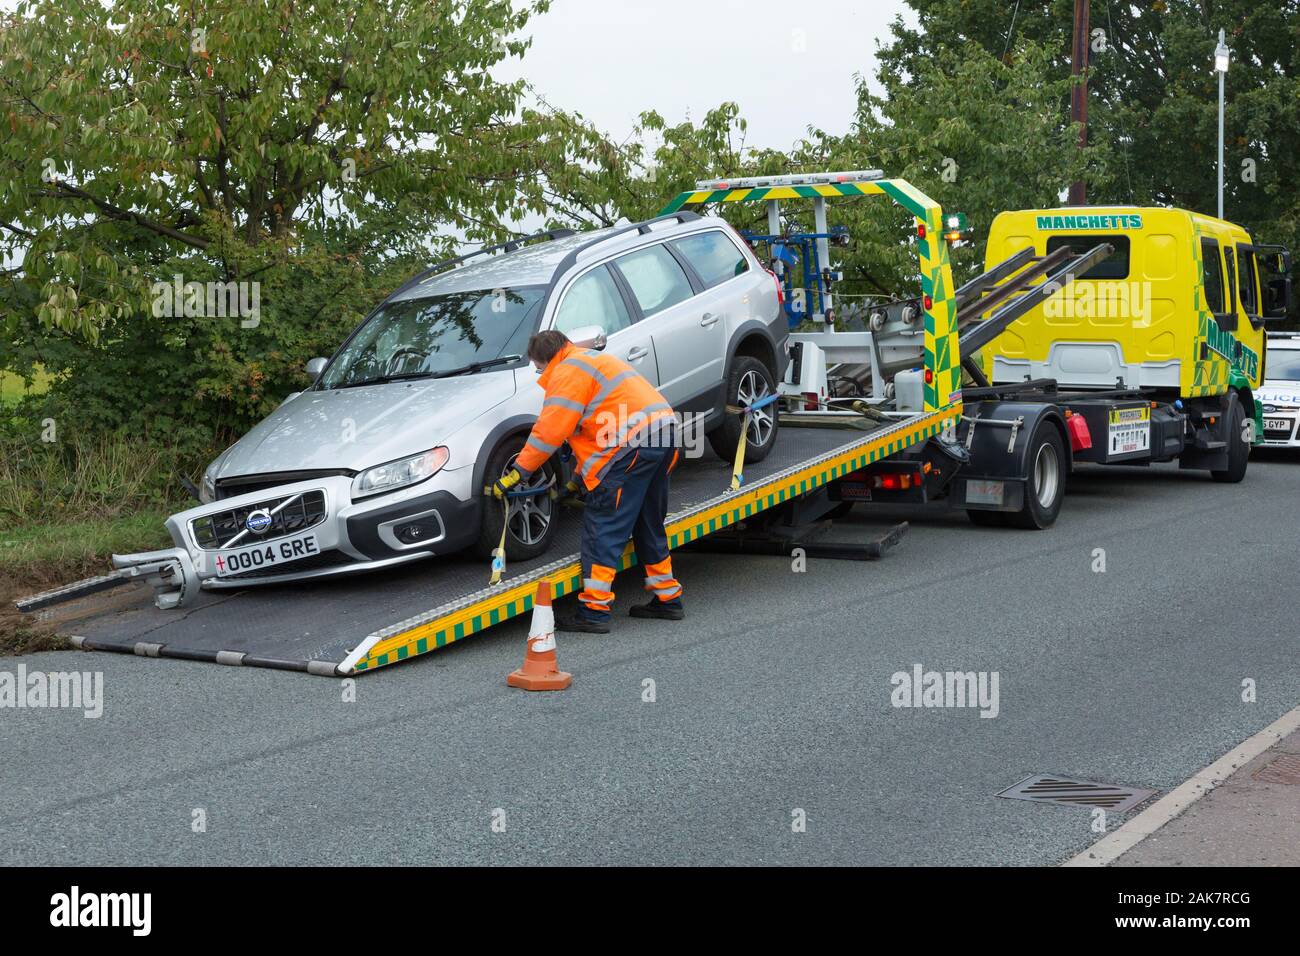 Une voiture d'être emmené sur une dépanneuse de récupération après un accident Banque D'Images